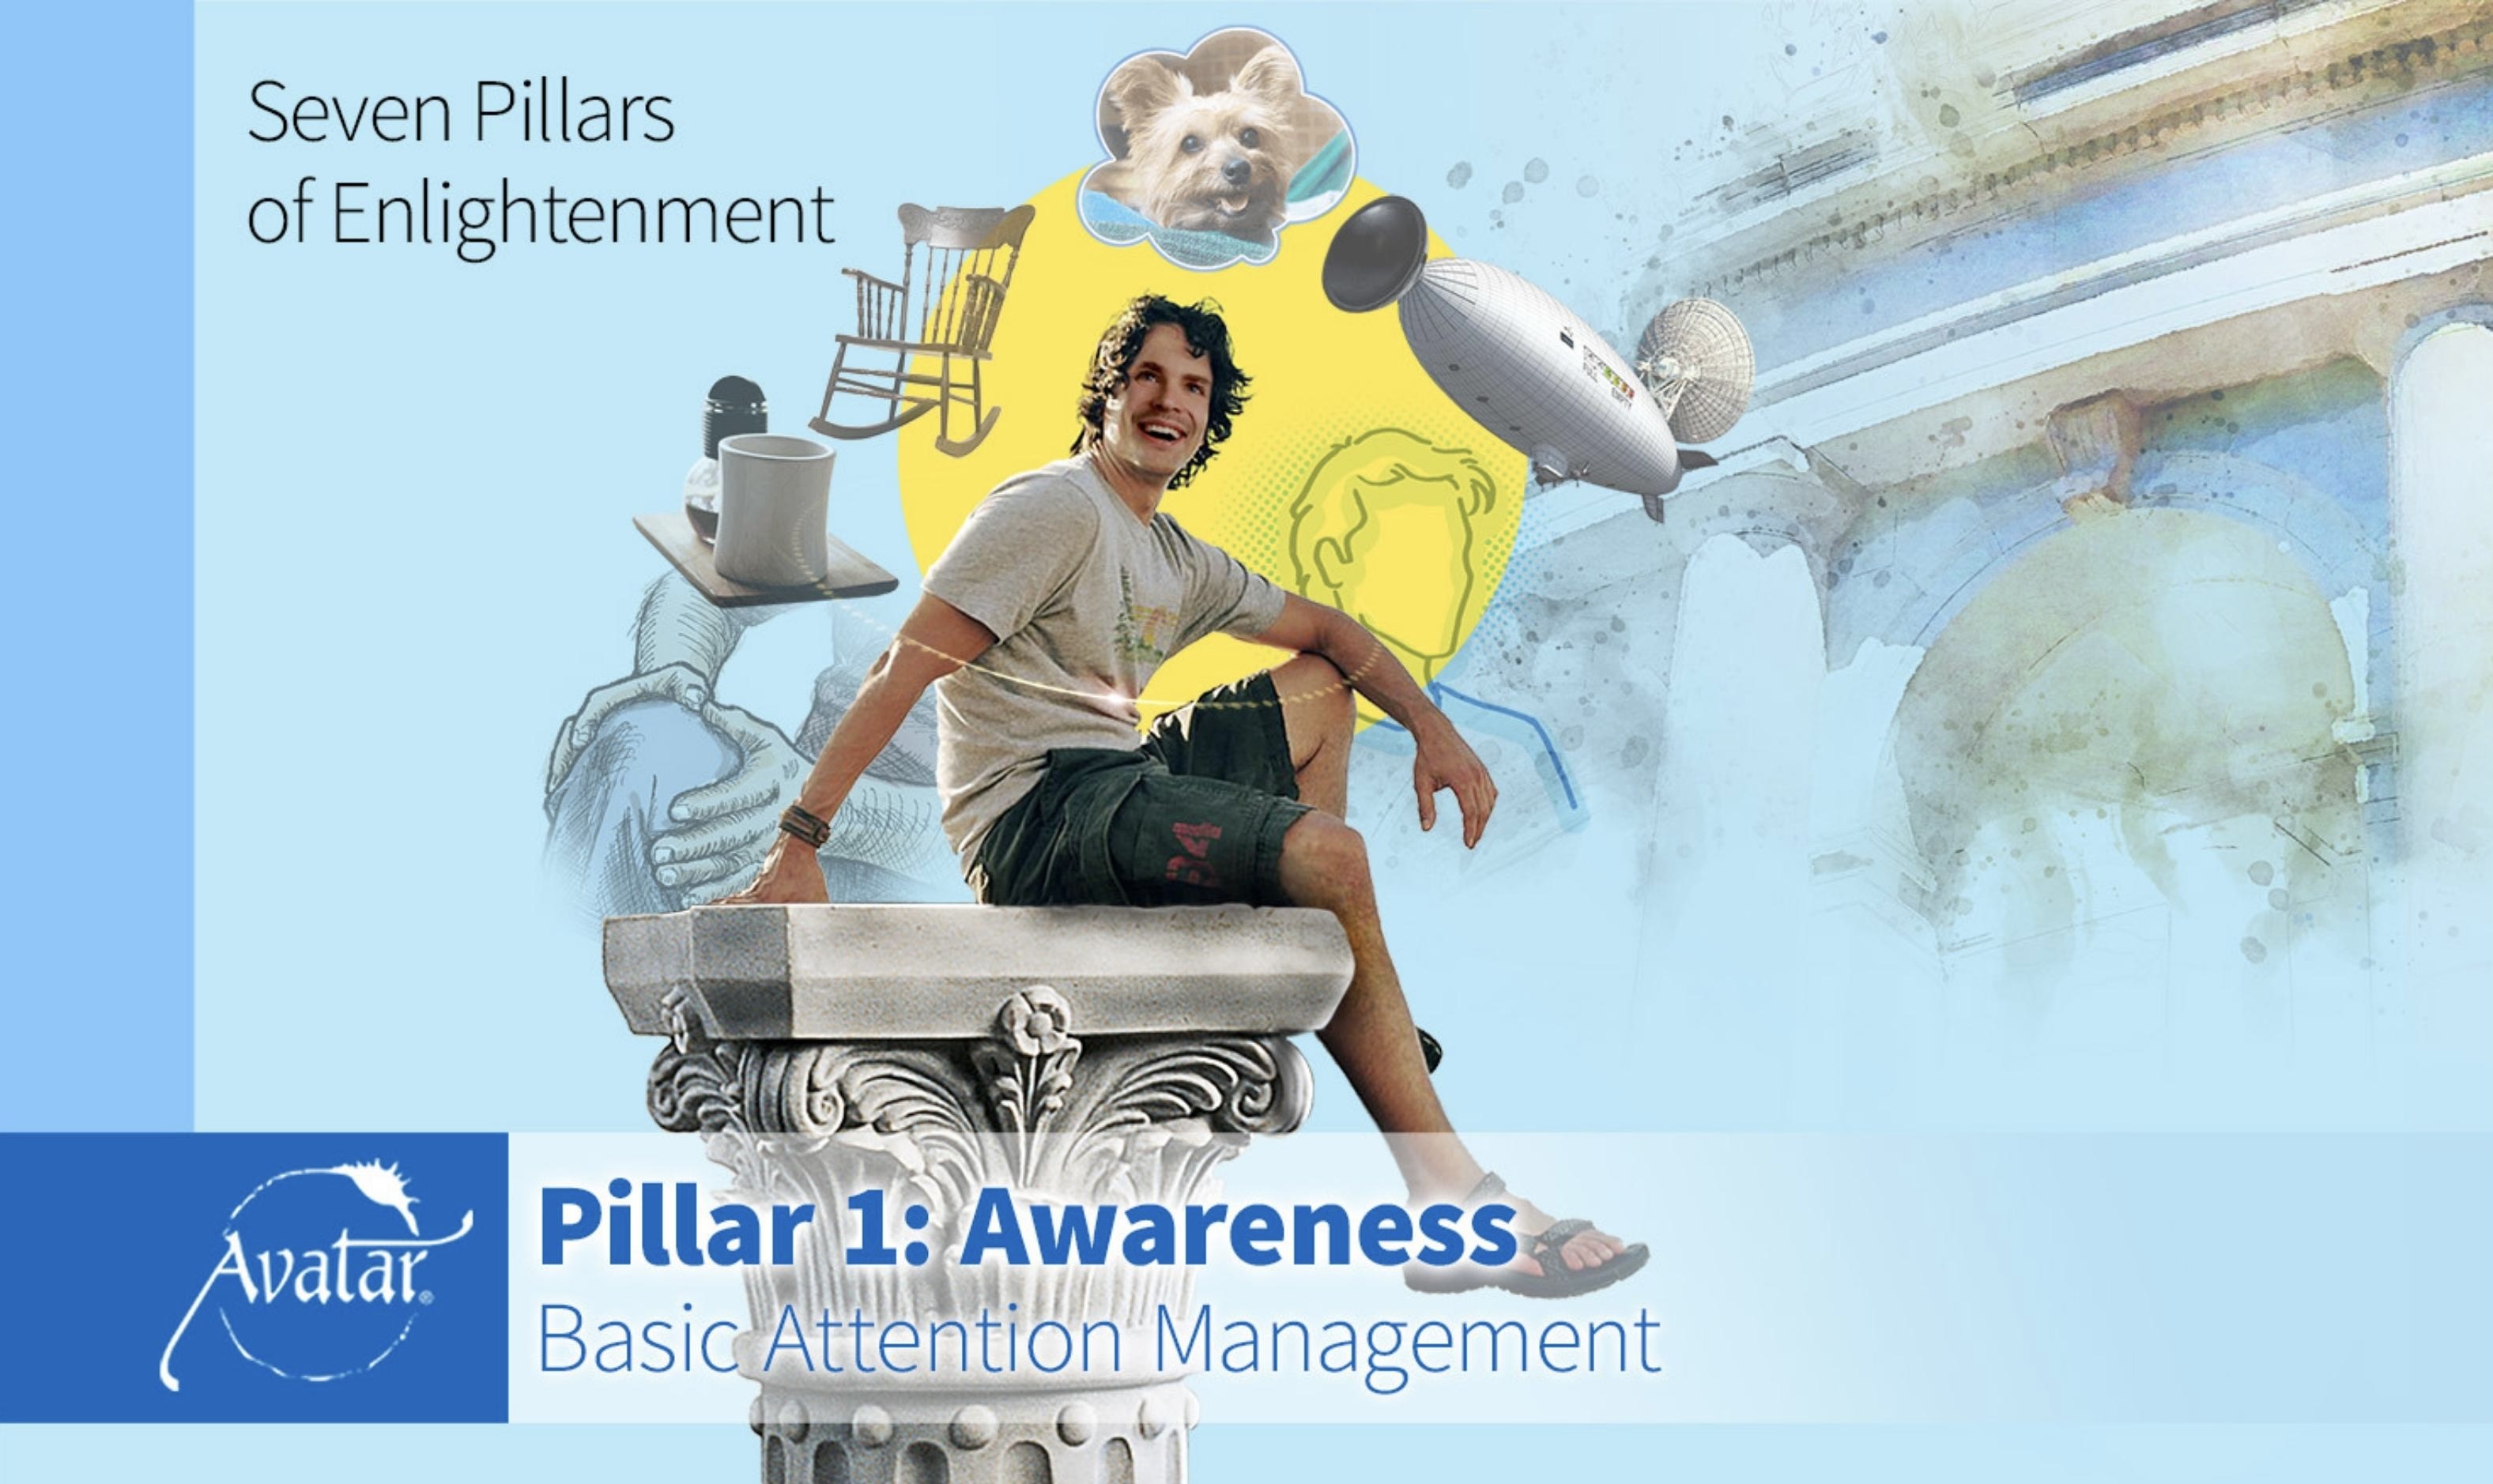 Pillar 1: Awareness - Basic Attention Management